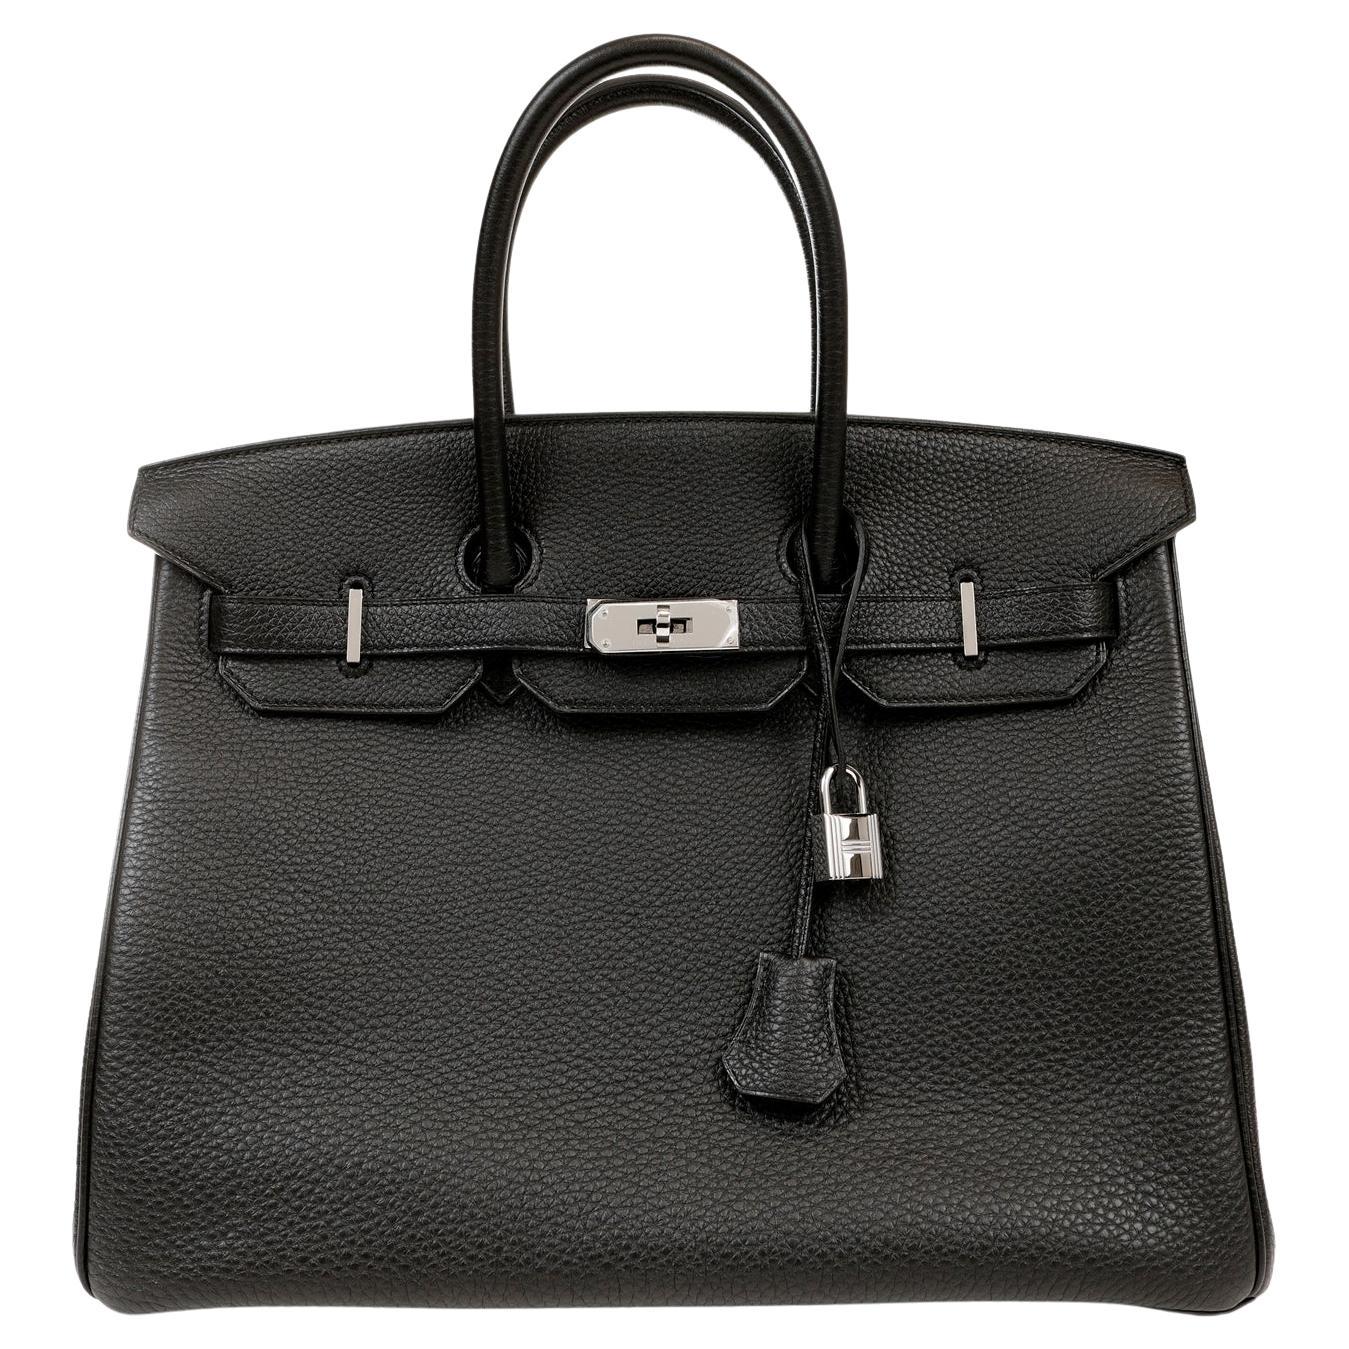 Hermès Black Togo 35 cm Birkin with Palladium